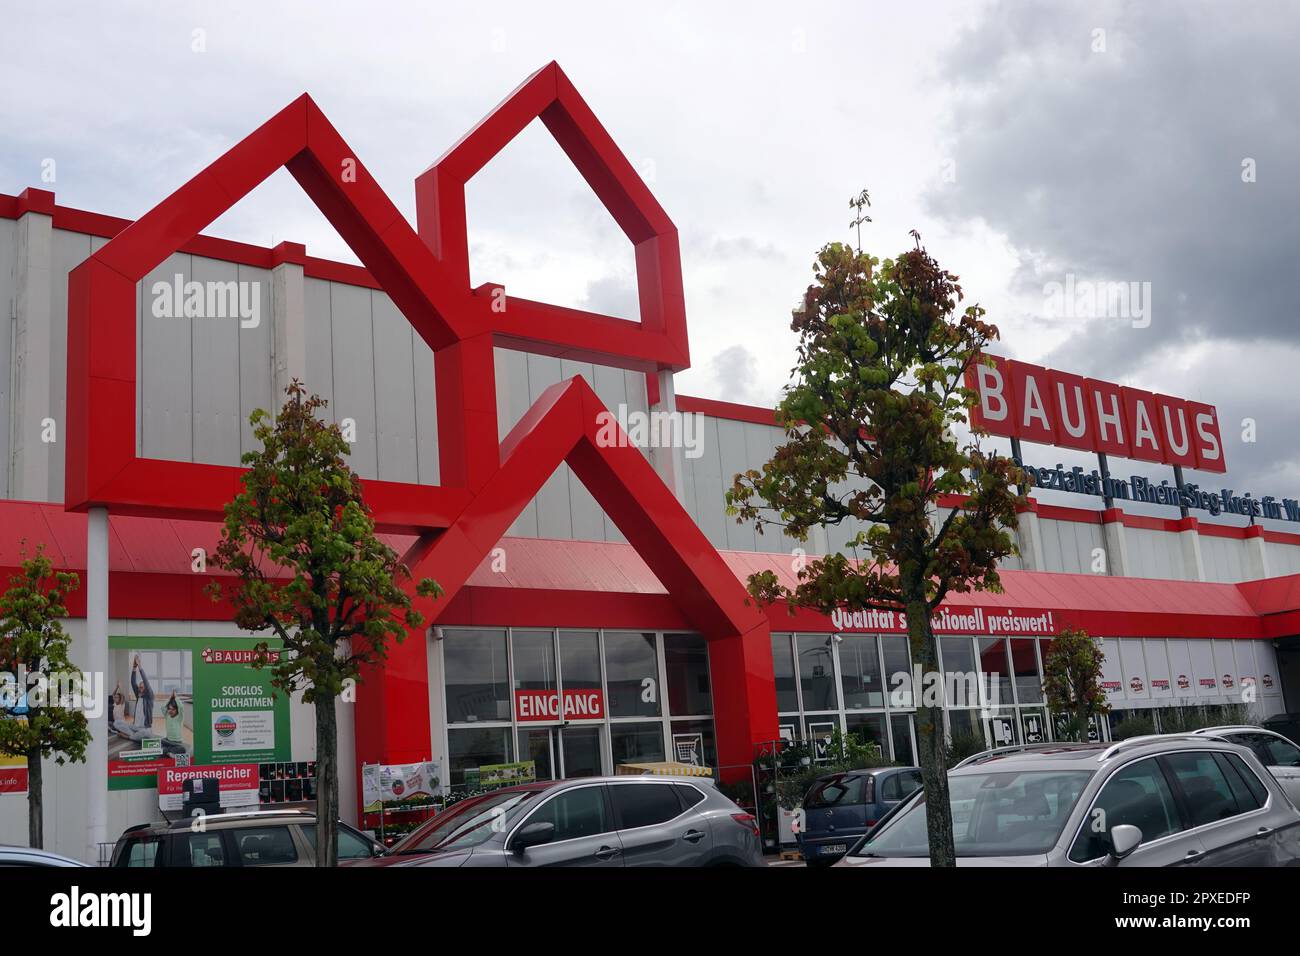 Bauhaus Baumarkt, Filiale der schweizerischen Bauhaus AG - Symbolbild, Nordrhein-Westfalen, Deutschland, Bornheim/Rheinland Banque D'Images